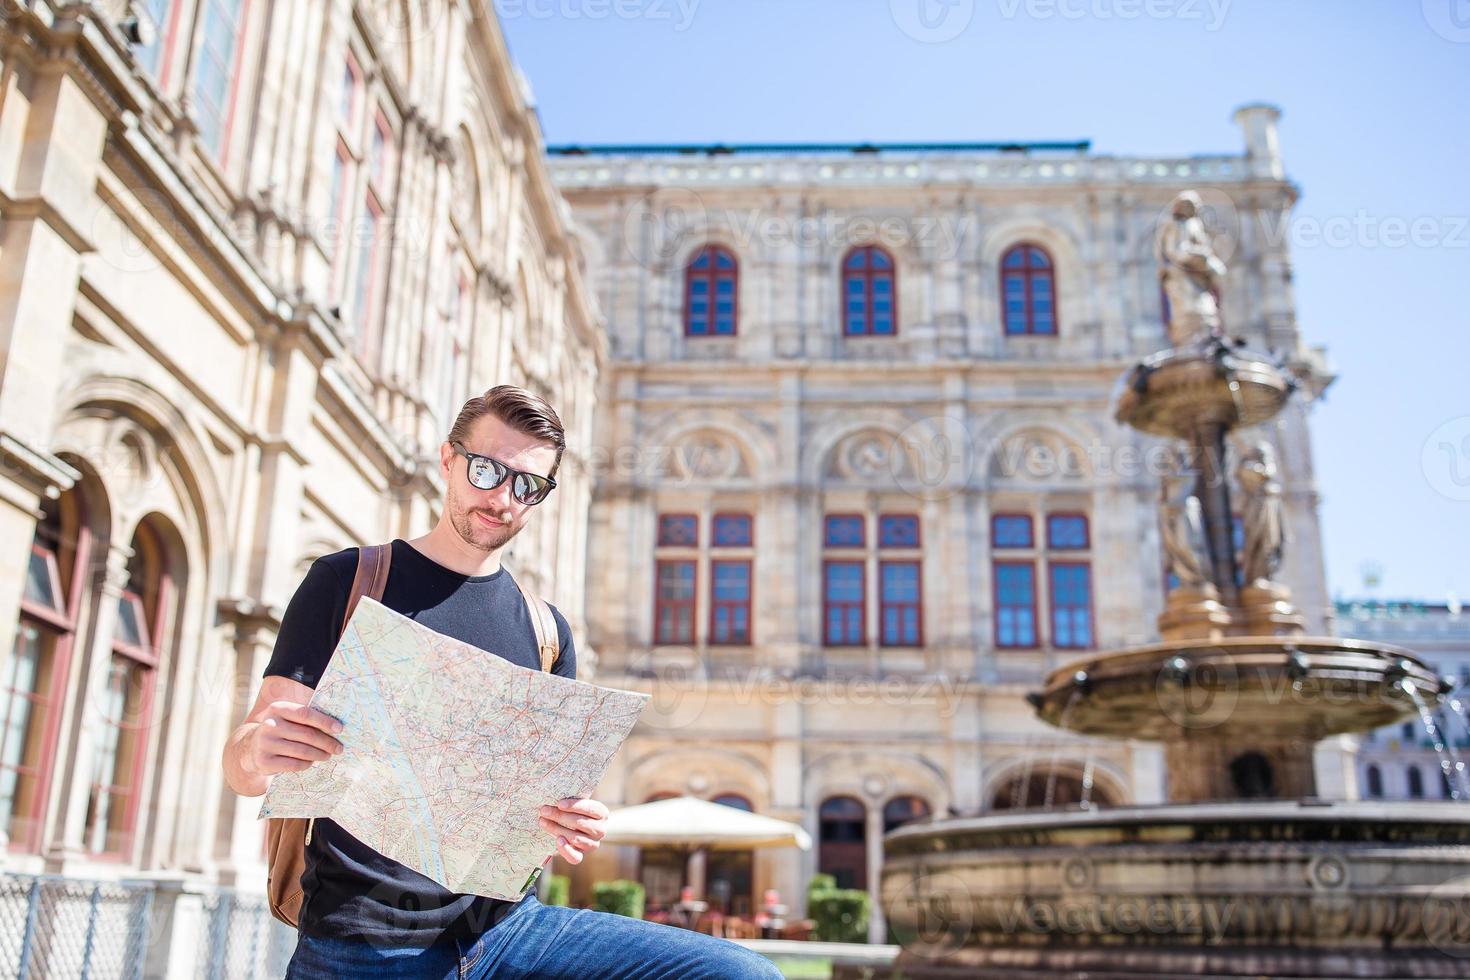 Mens toerist met een stad kaart en rugzak in Europa straat. Kaukasisch jongen op zoek met kaart van Europese stad. foto